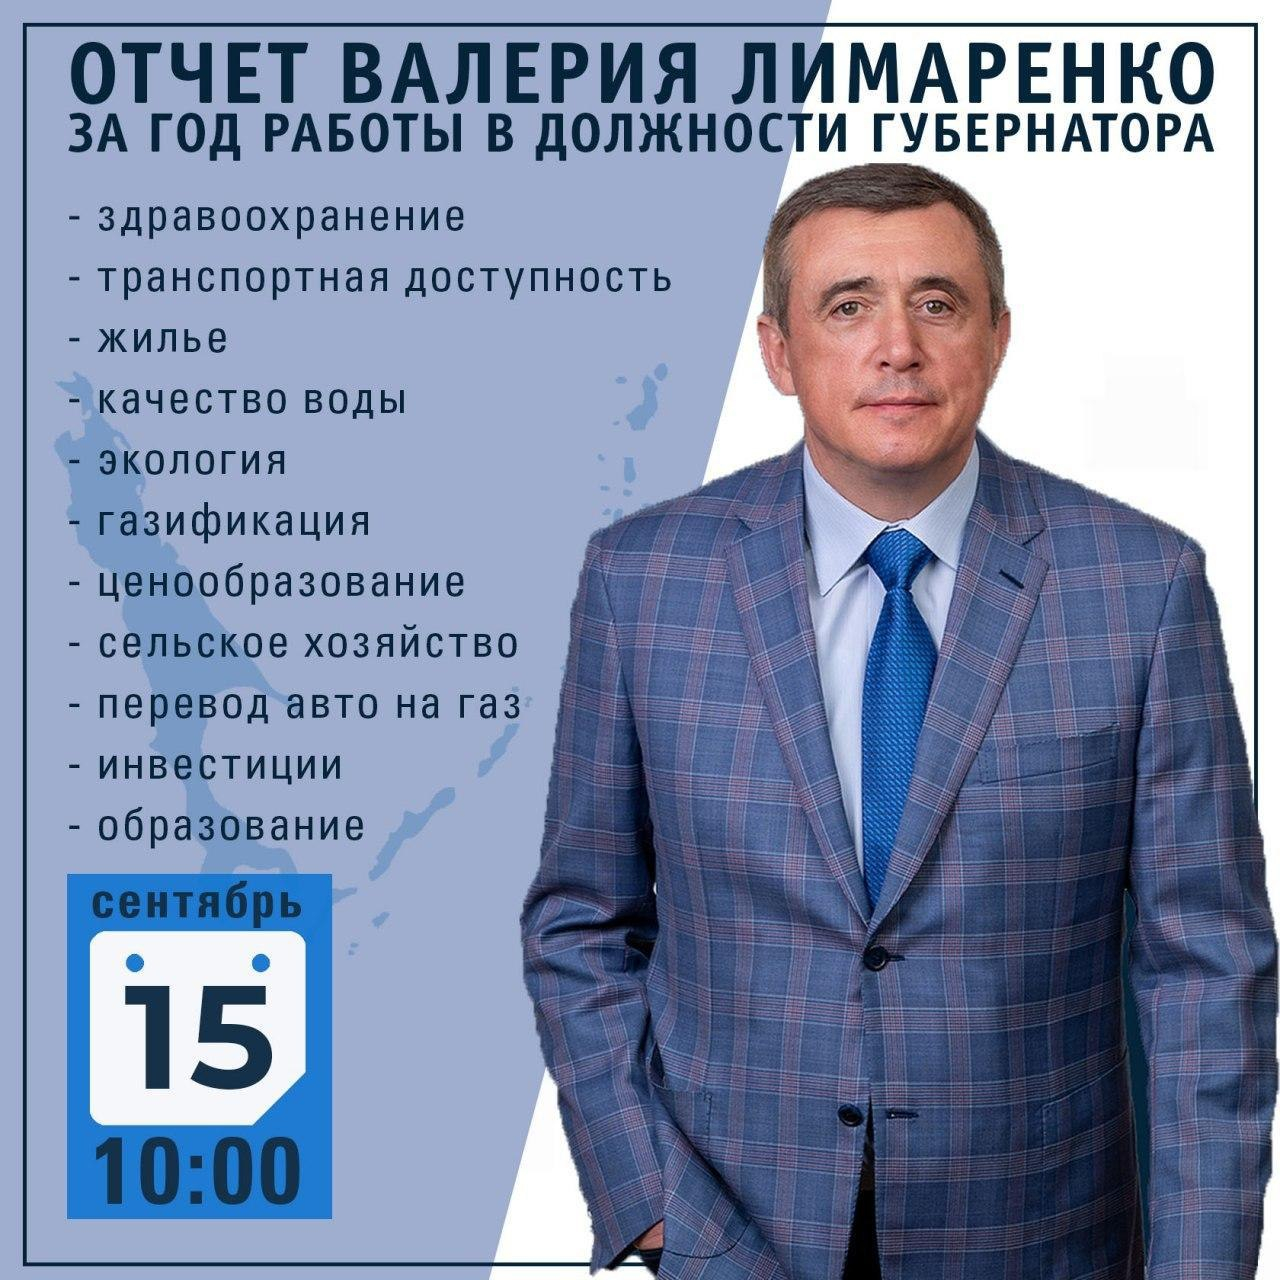 Валерий Лимаренко отчитается за год работы в должности губернатора Сахалинской области